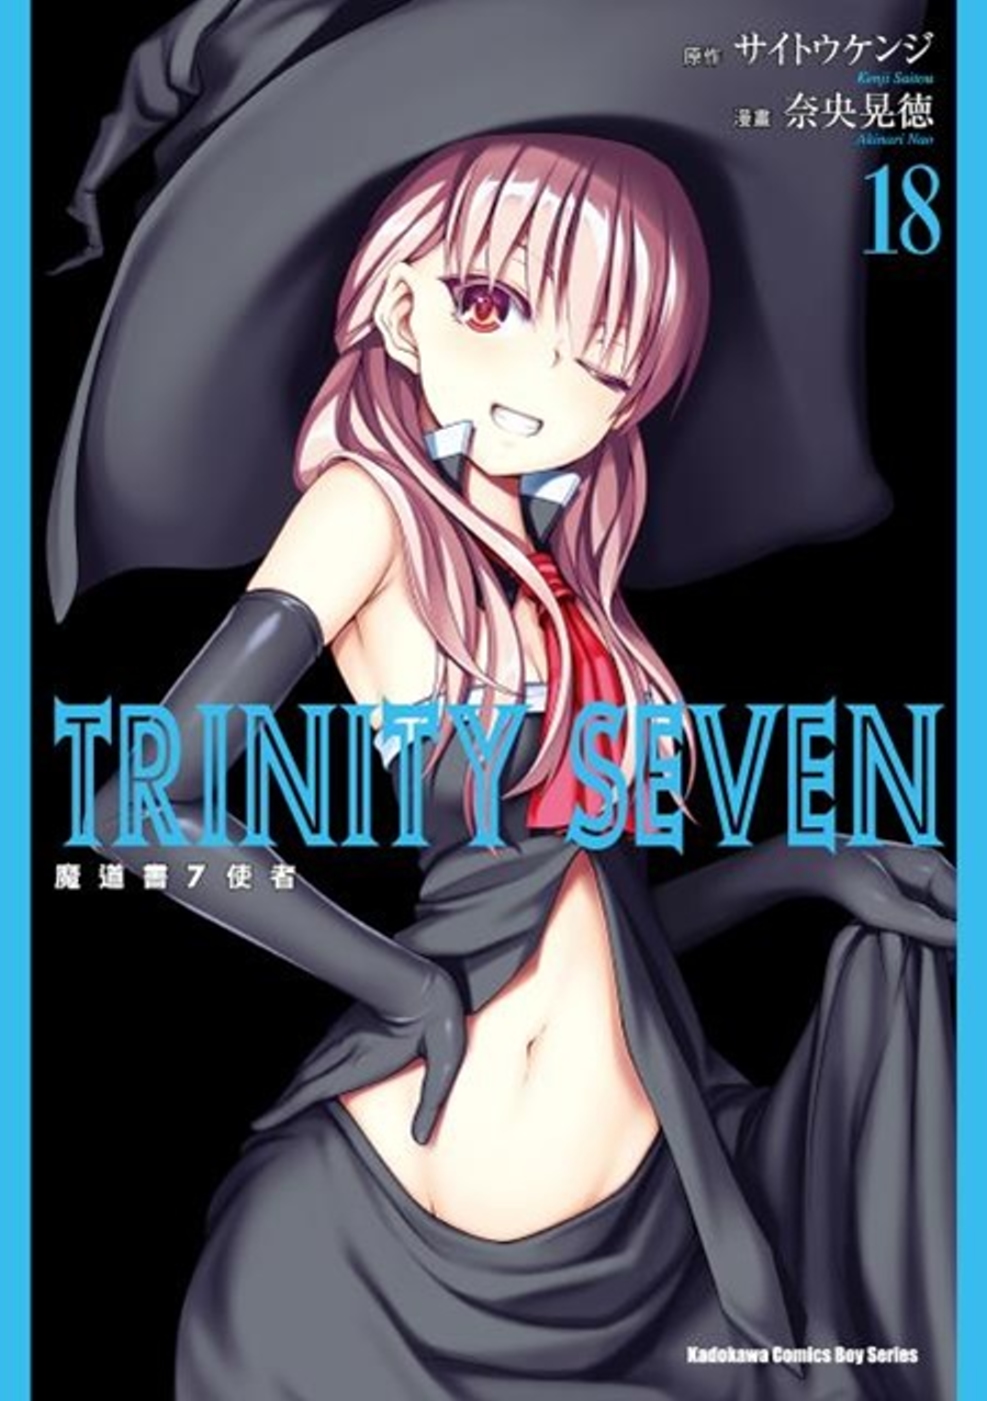 TRINITY SEVEN 魔道書7使者 (18)(限台灣)